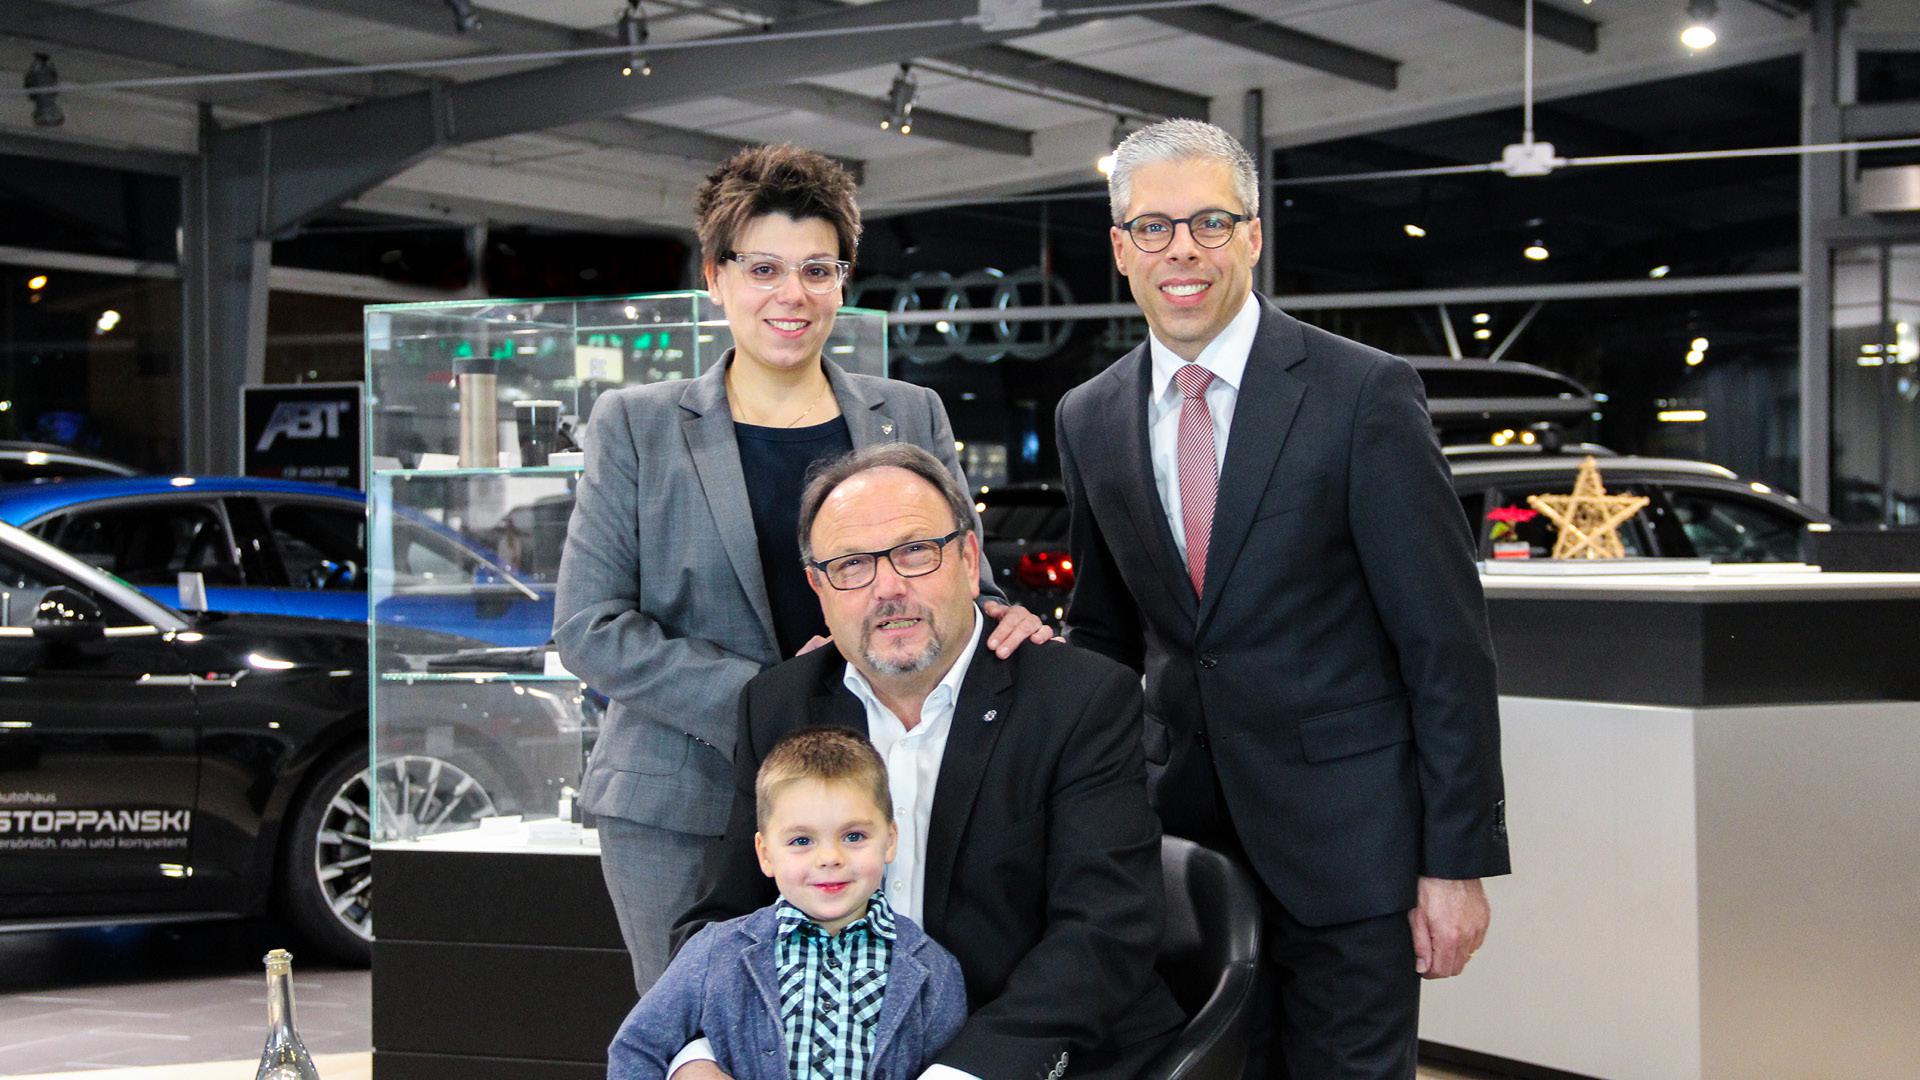 Martina Stoppanski-Auracher, Rolf Stoppanski und Volker Auracher (von links) freuen sich mit Sohn beziehungsweise Enkelkind Jonathan auf die Eröffnung.